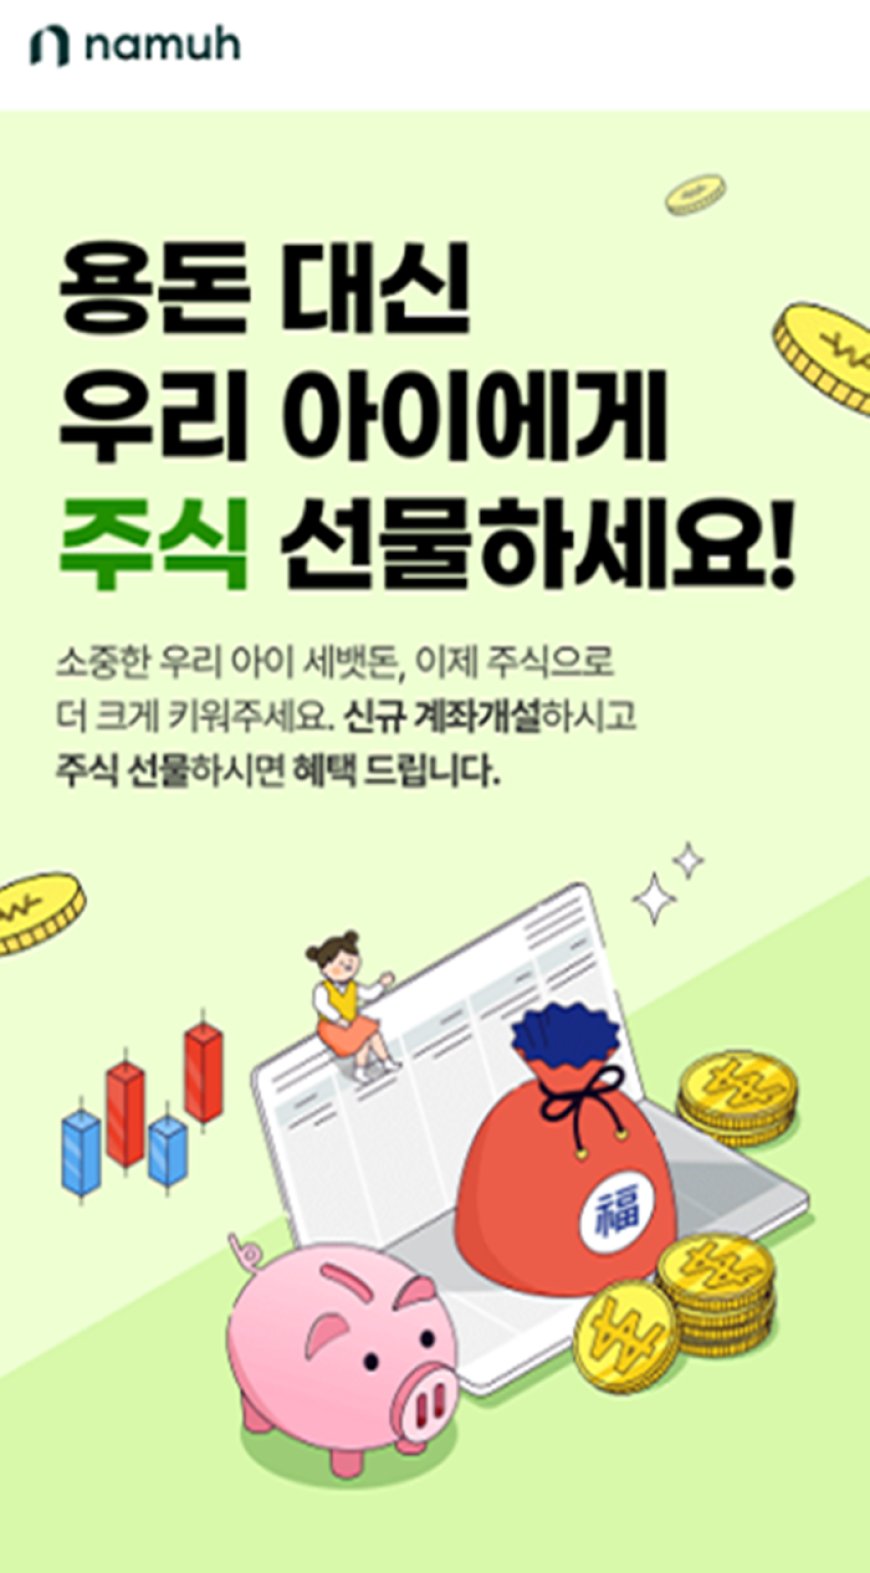 NH투자증권 나무, 미성년 고객 신규 계좌개설 이벤트 진행